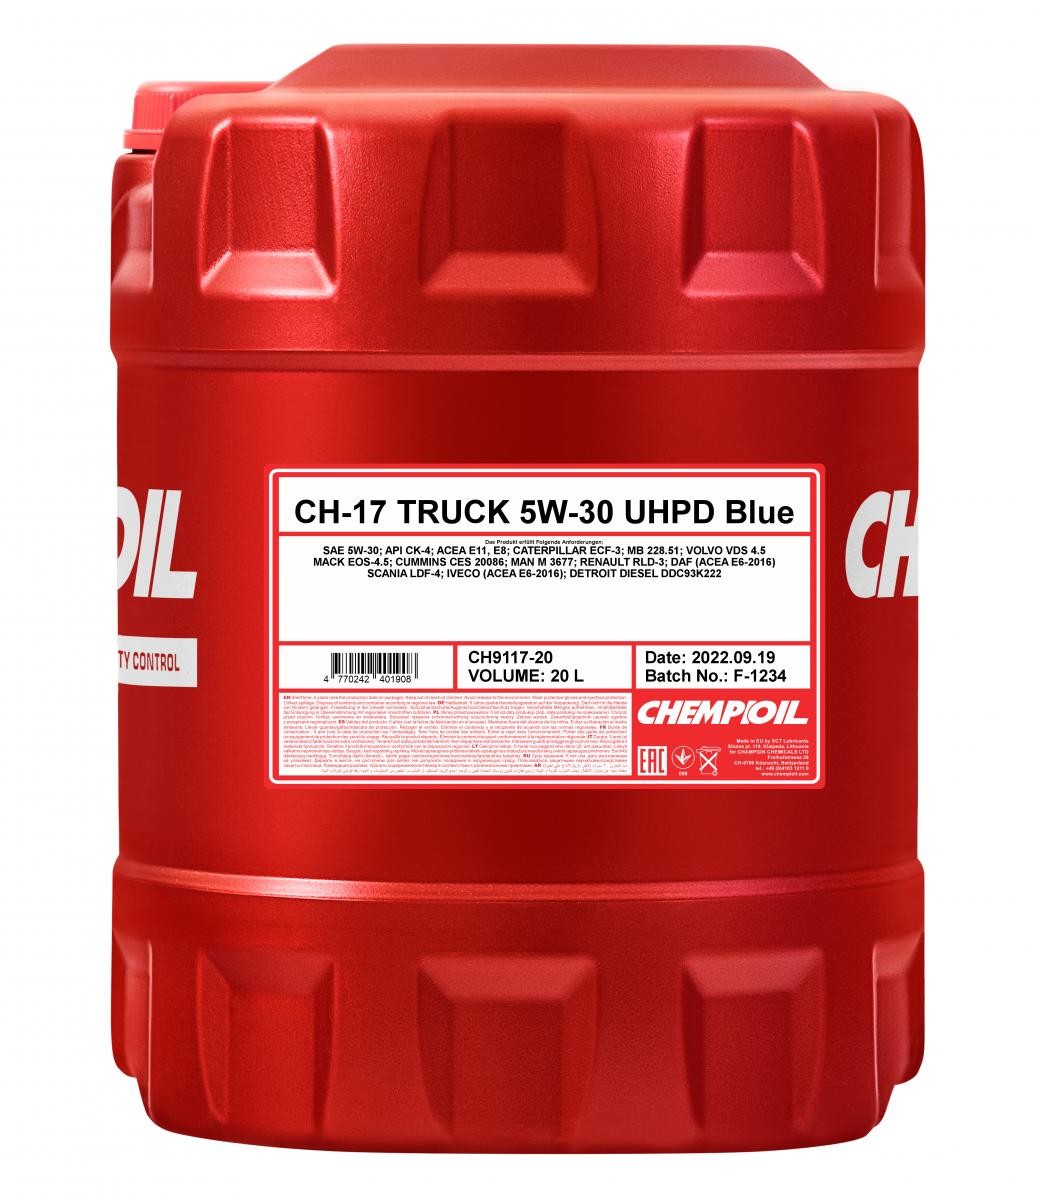 Kaufen Motorenöl CHEMPIOIL CH9117-20 Truck, UHPD Blue CH-17 5W-30, 20l